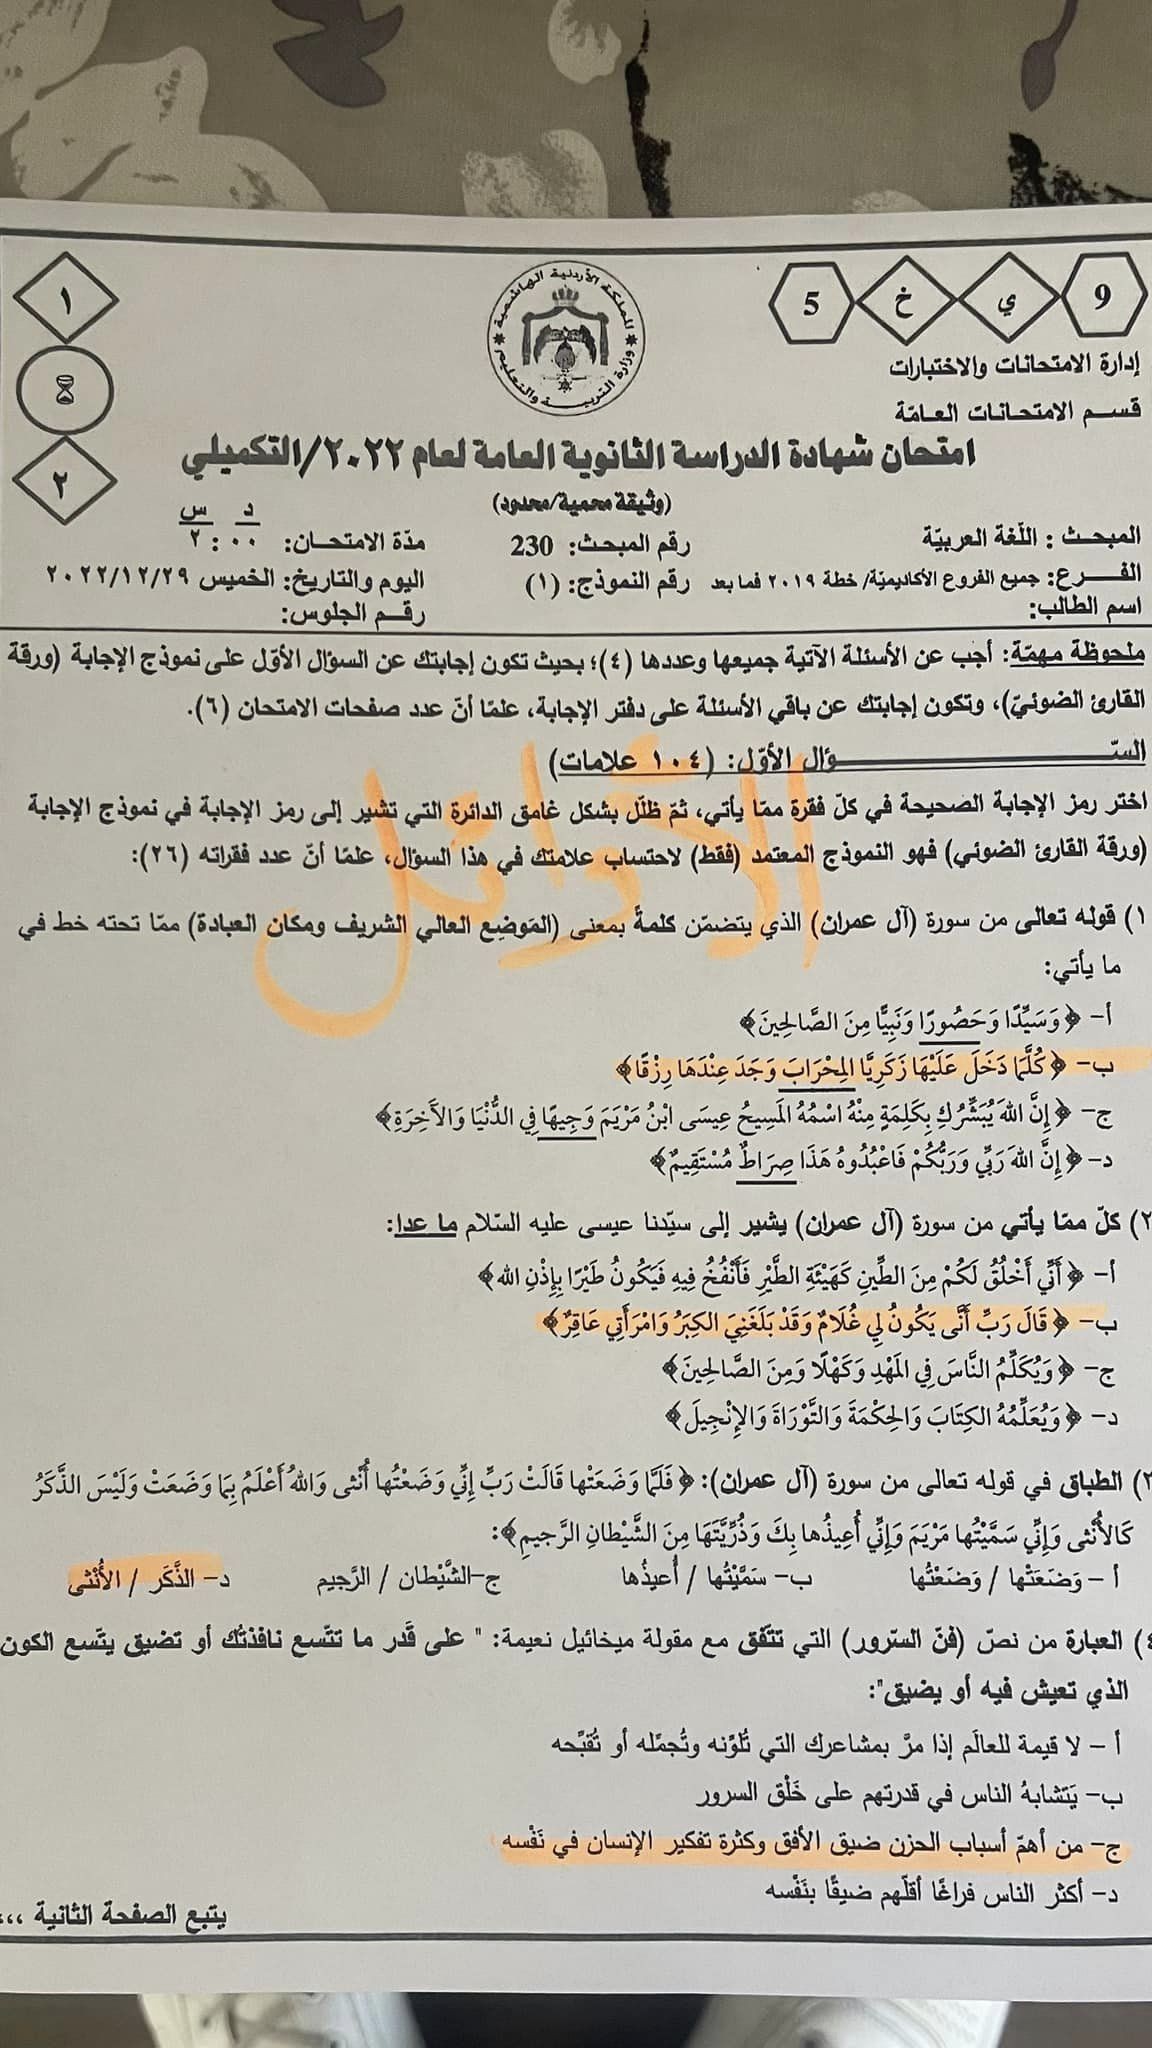 حل امتحان عربي مهارات توجيهي ٢٠٢٢ تكميلي الأردن 1.jpg